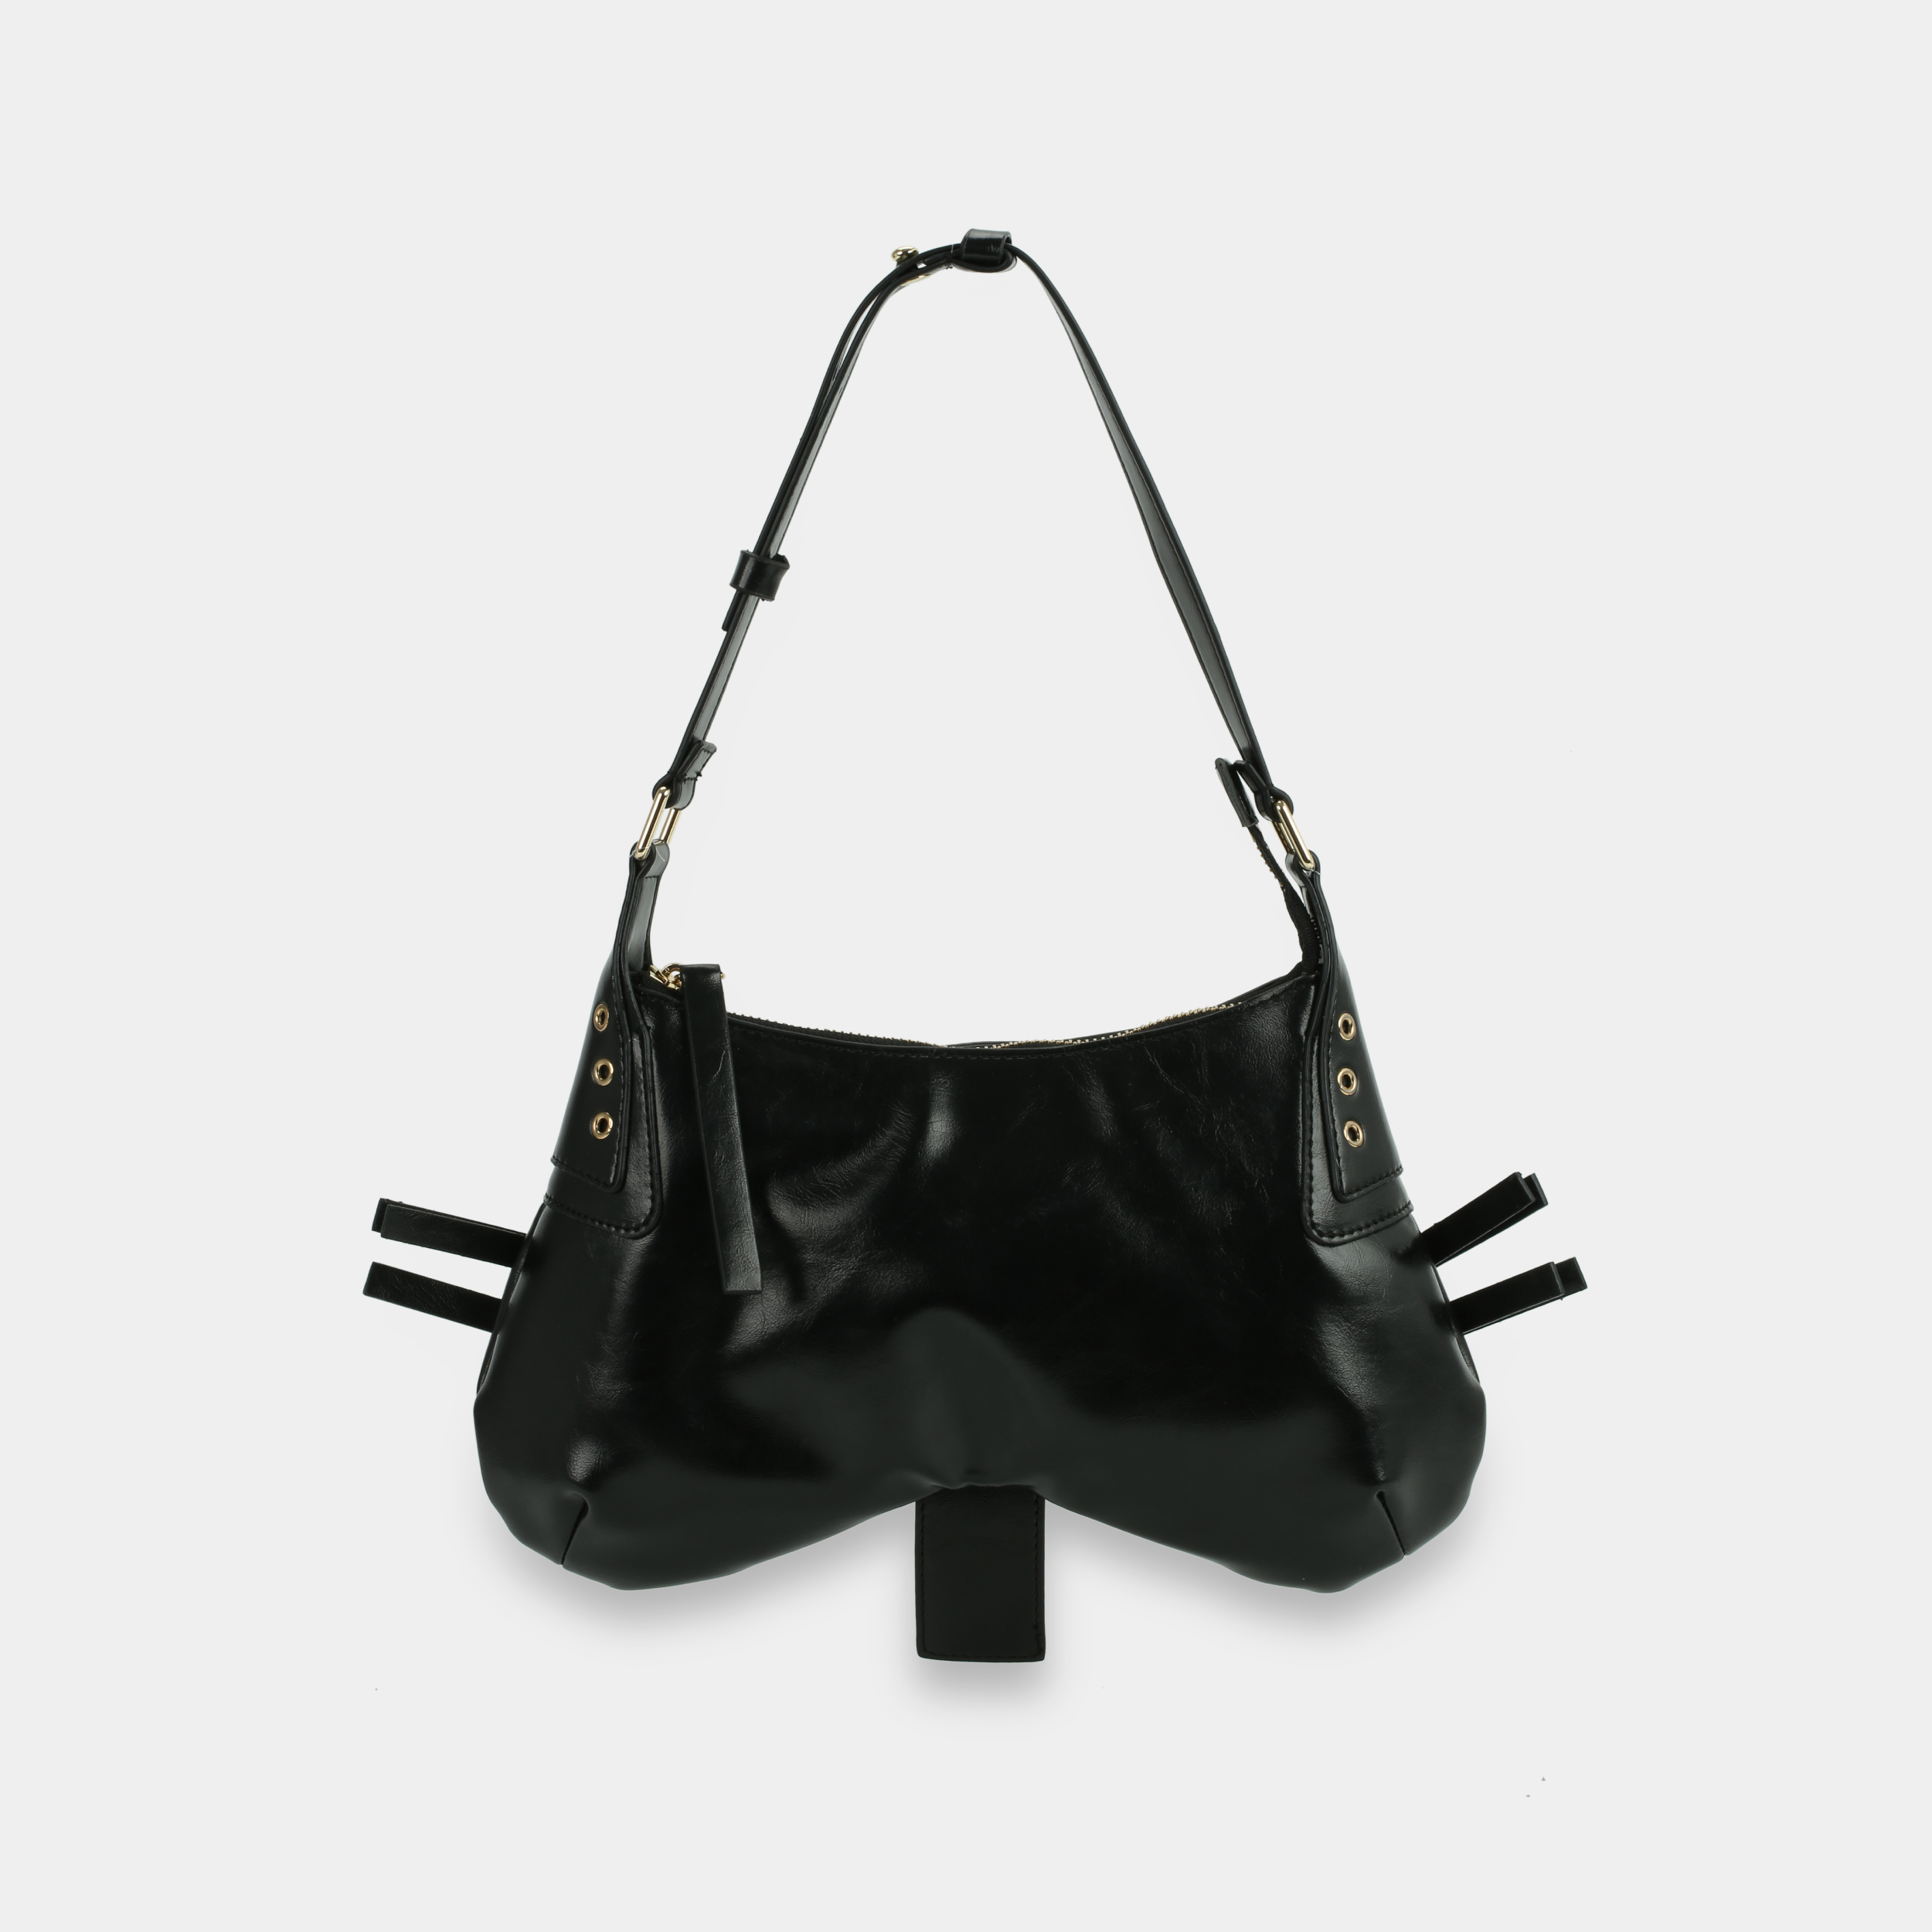 BUTTERFLY Handbag in Black